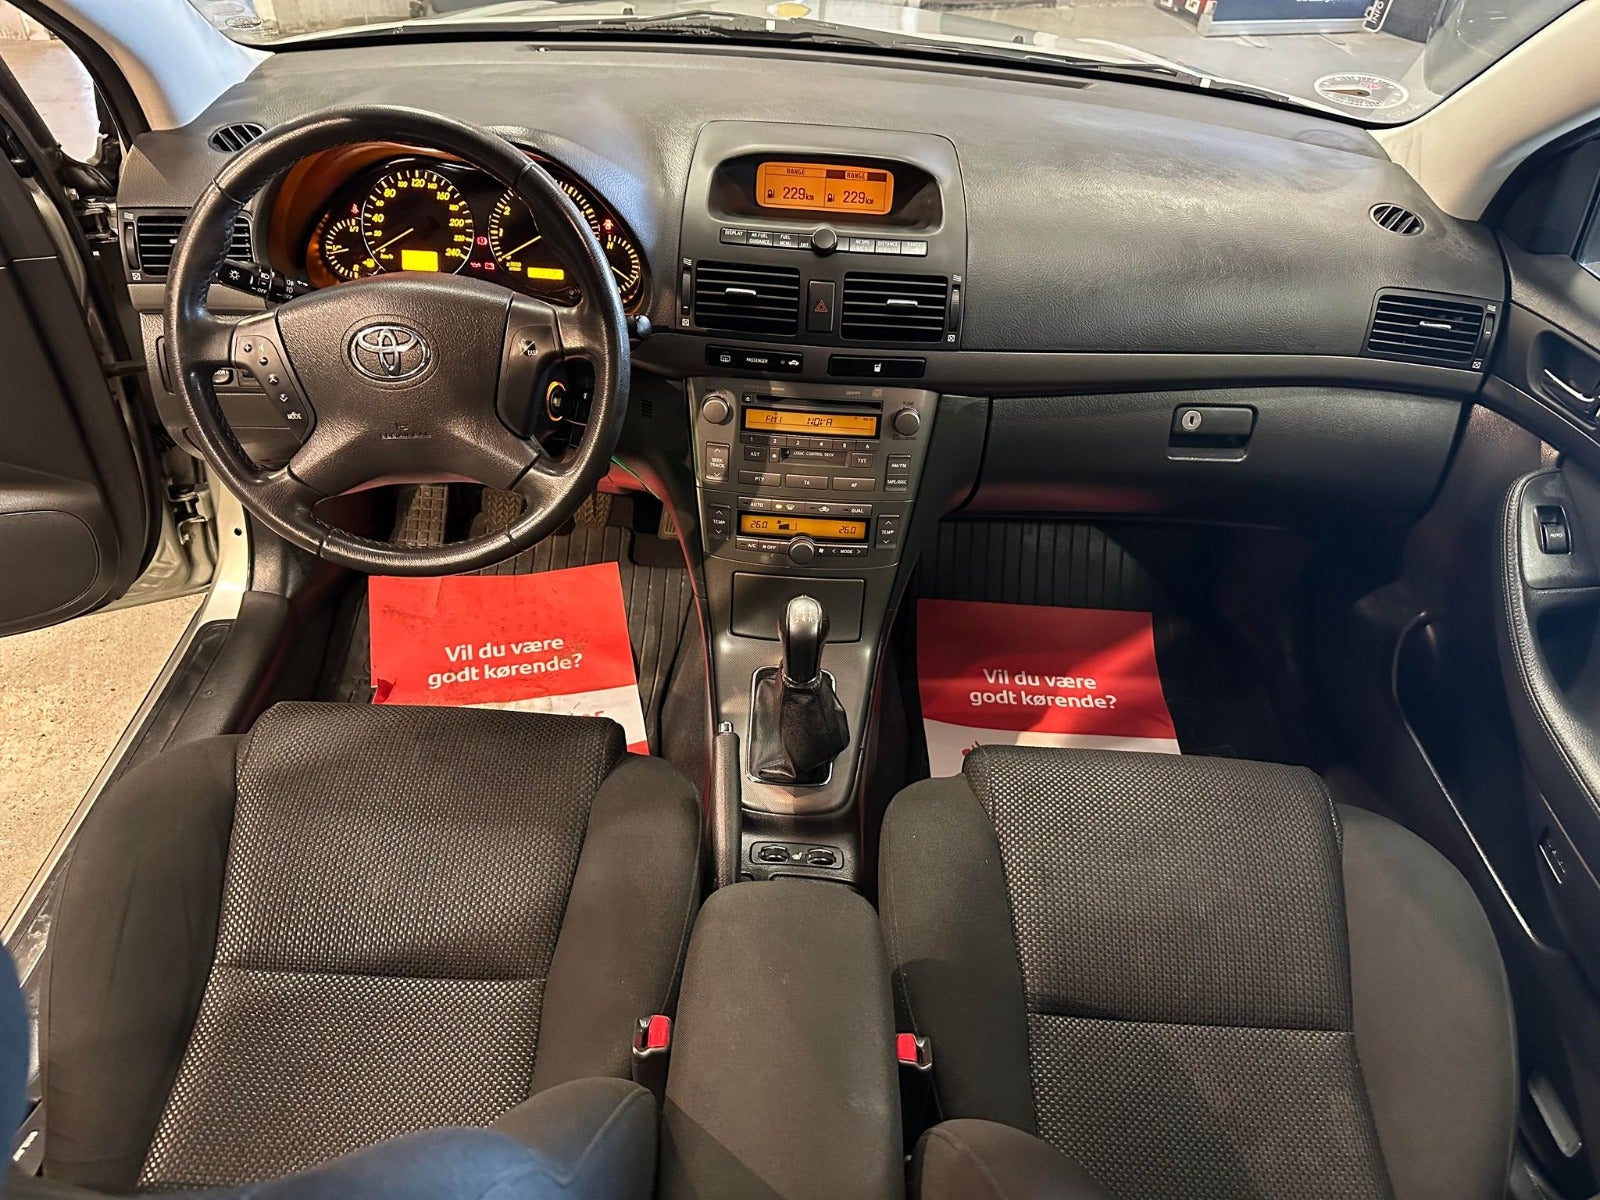 Toyota Avensis 1,8 VVT-i Sol Benzin modelår 2004 km 143000